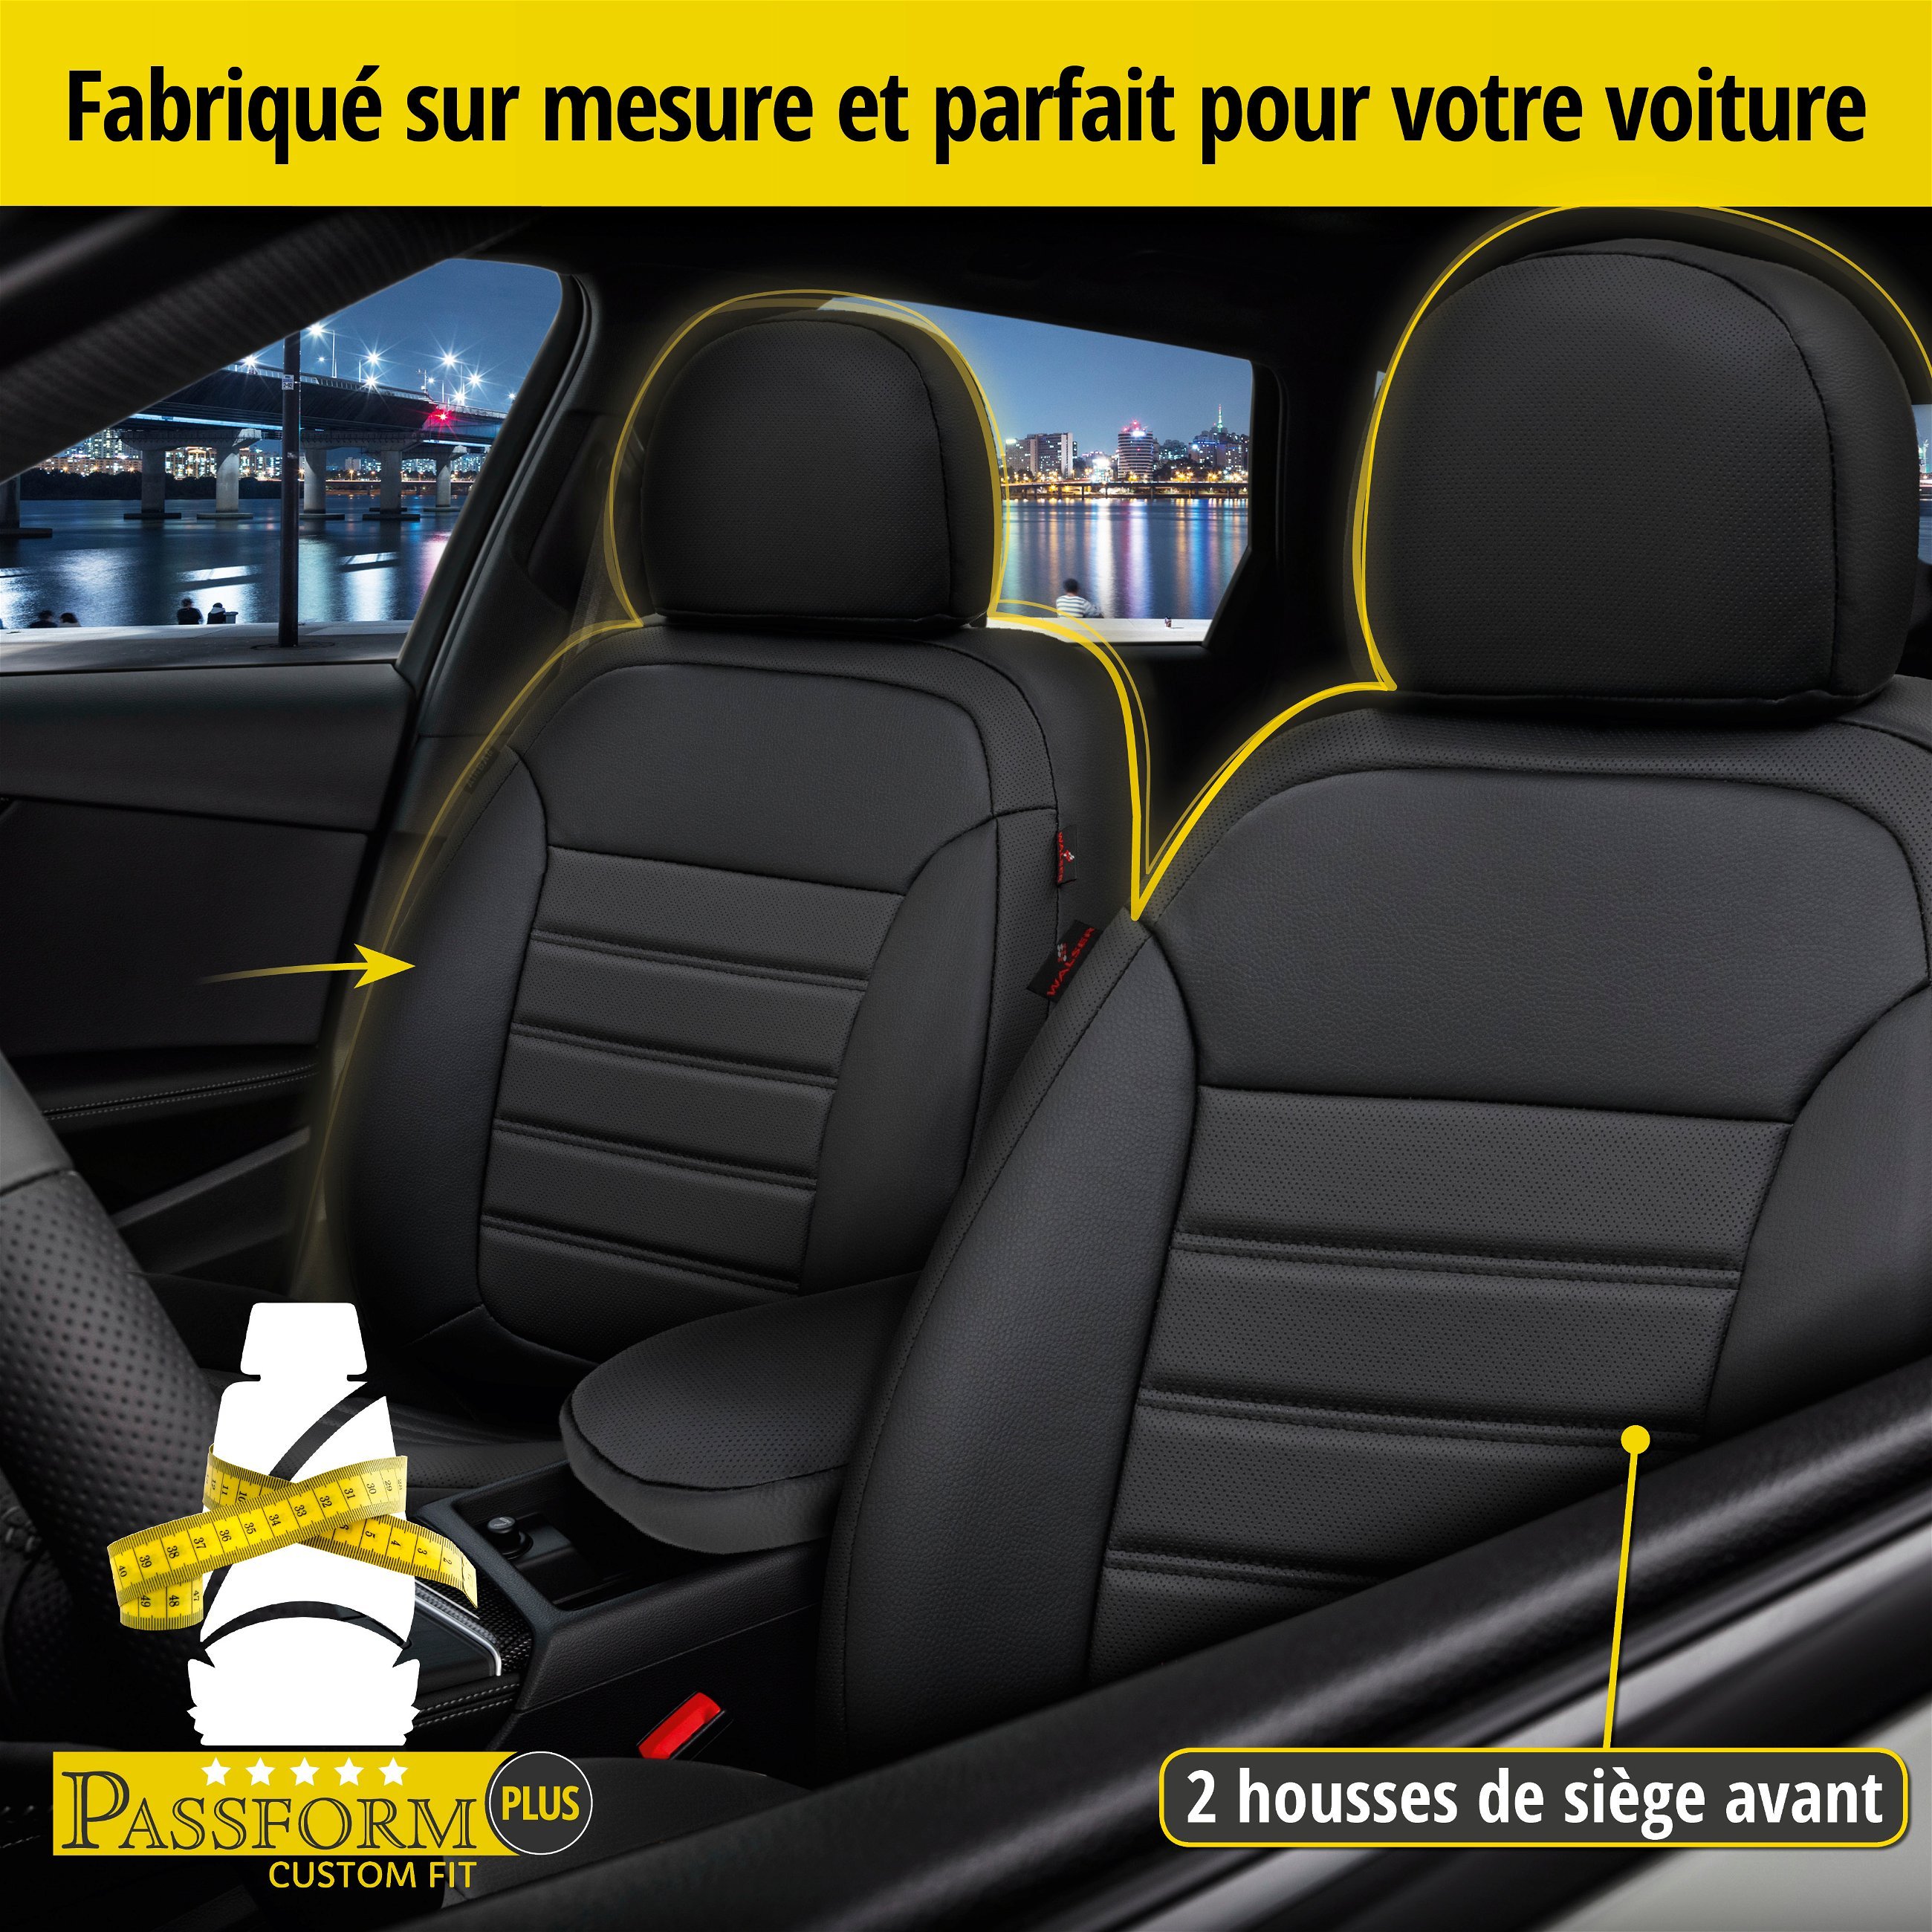 Housse de siège Robusto pour VW Tiguan 09/2007 - 07/2018, 2 housses de siège individuelles pour les sièges normaux